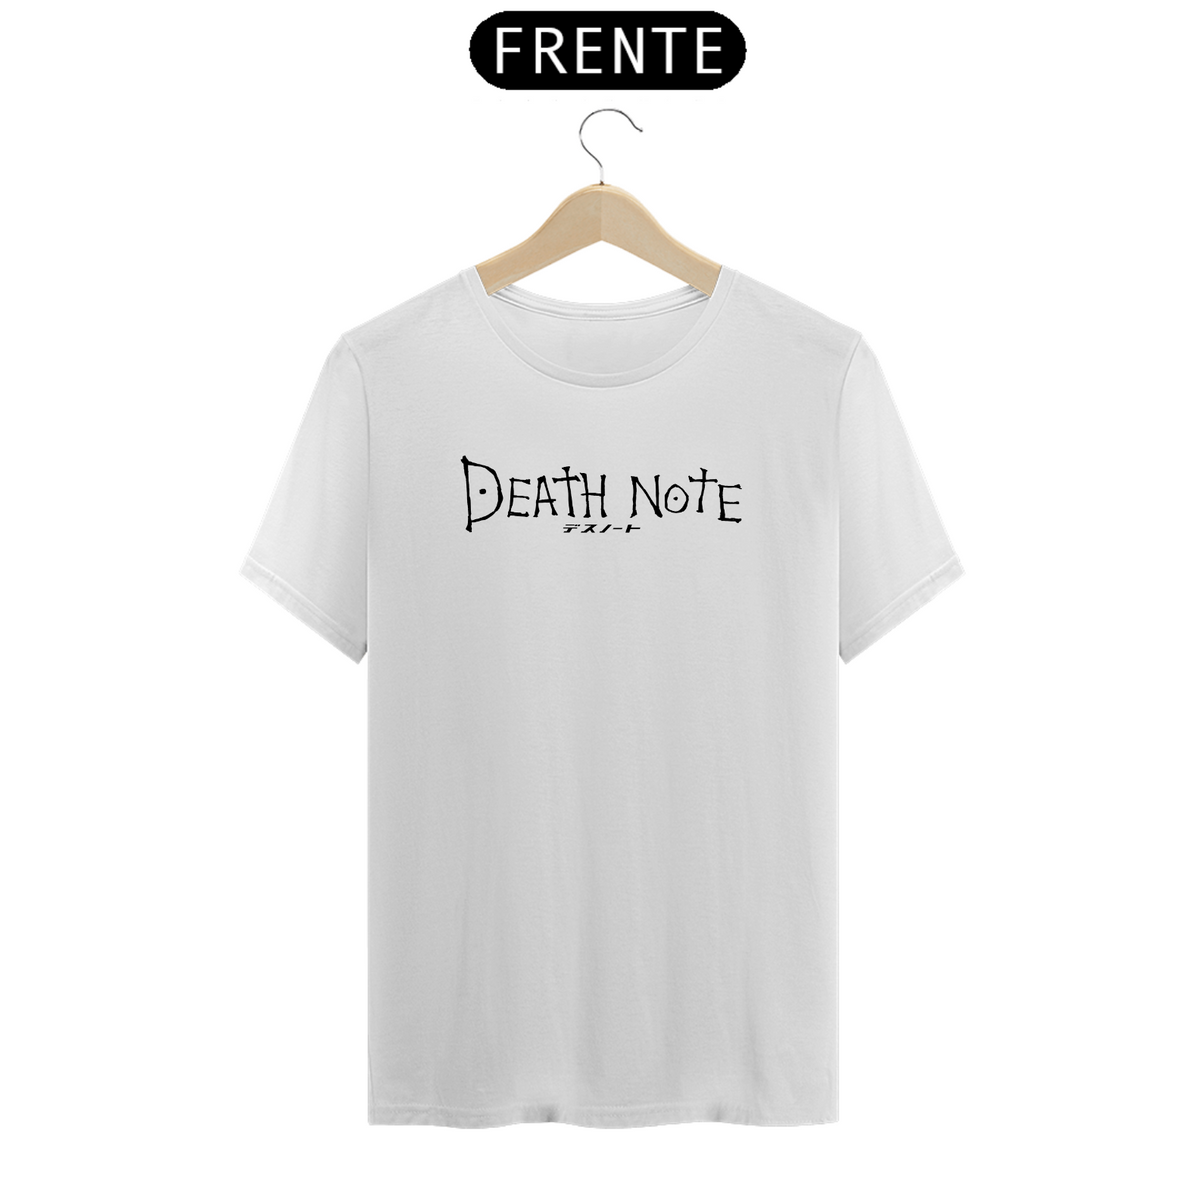 Nome do produto: T-shirt Death note Branca e Cinza